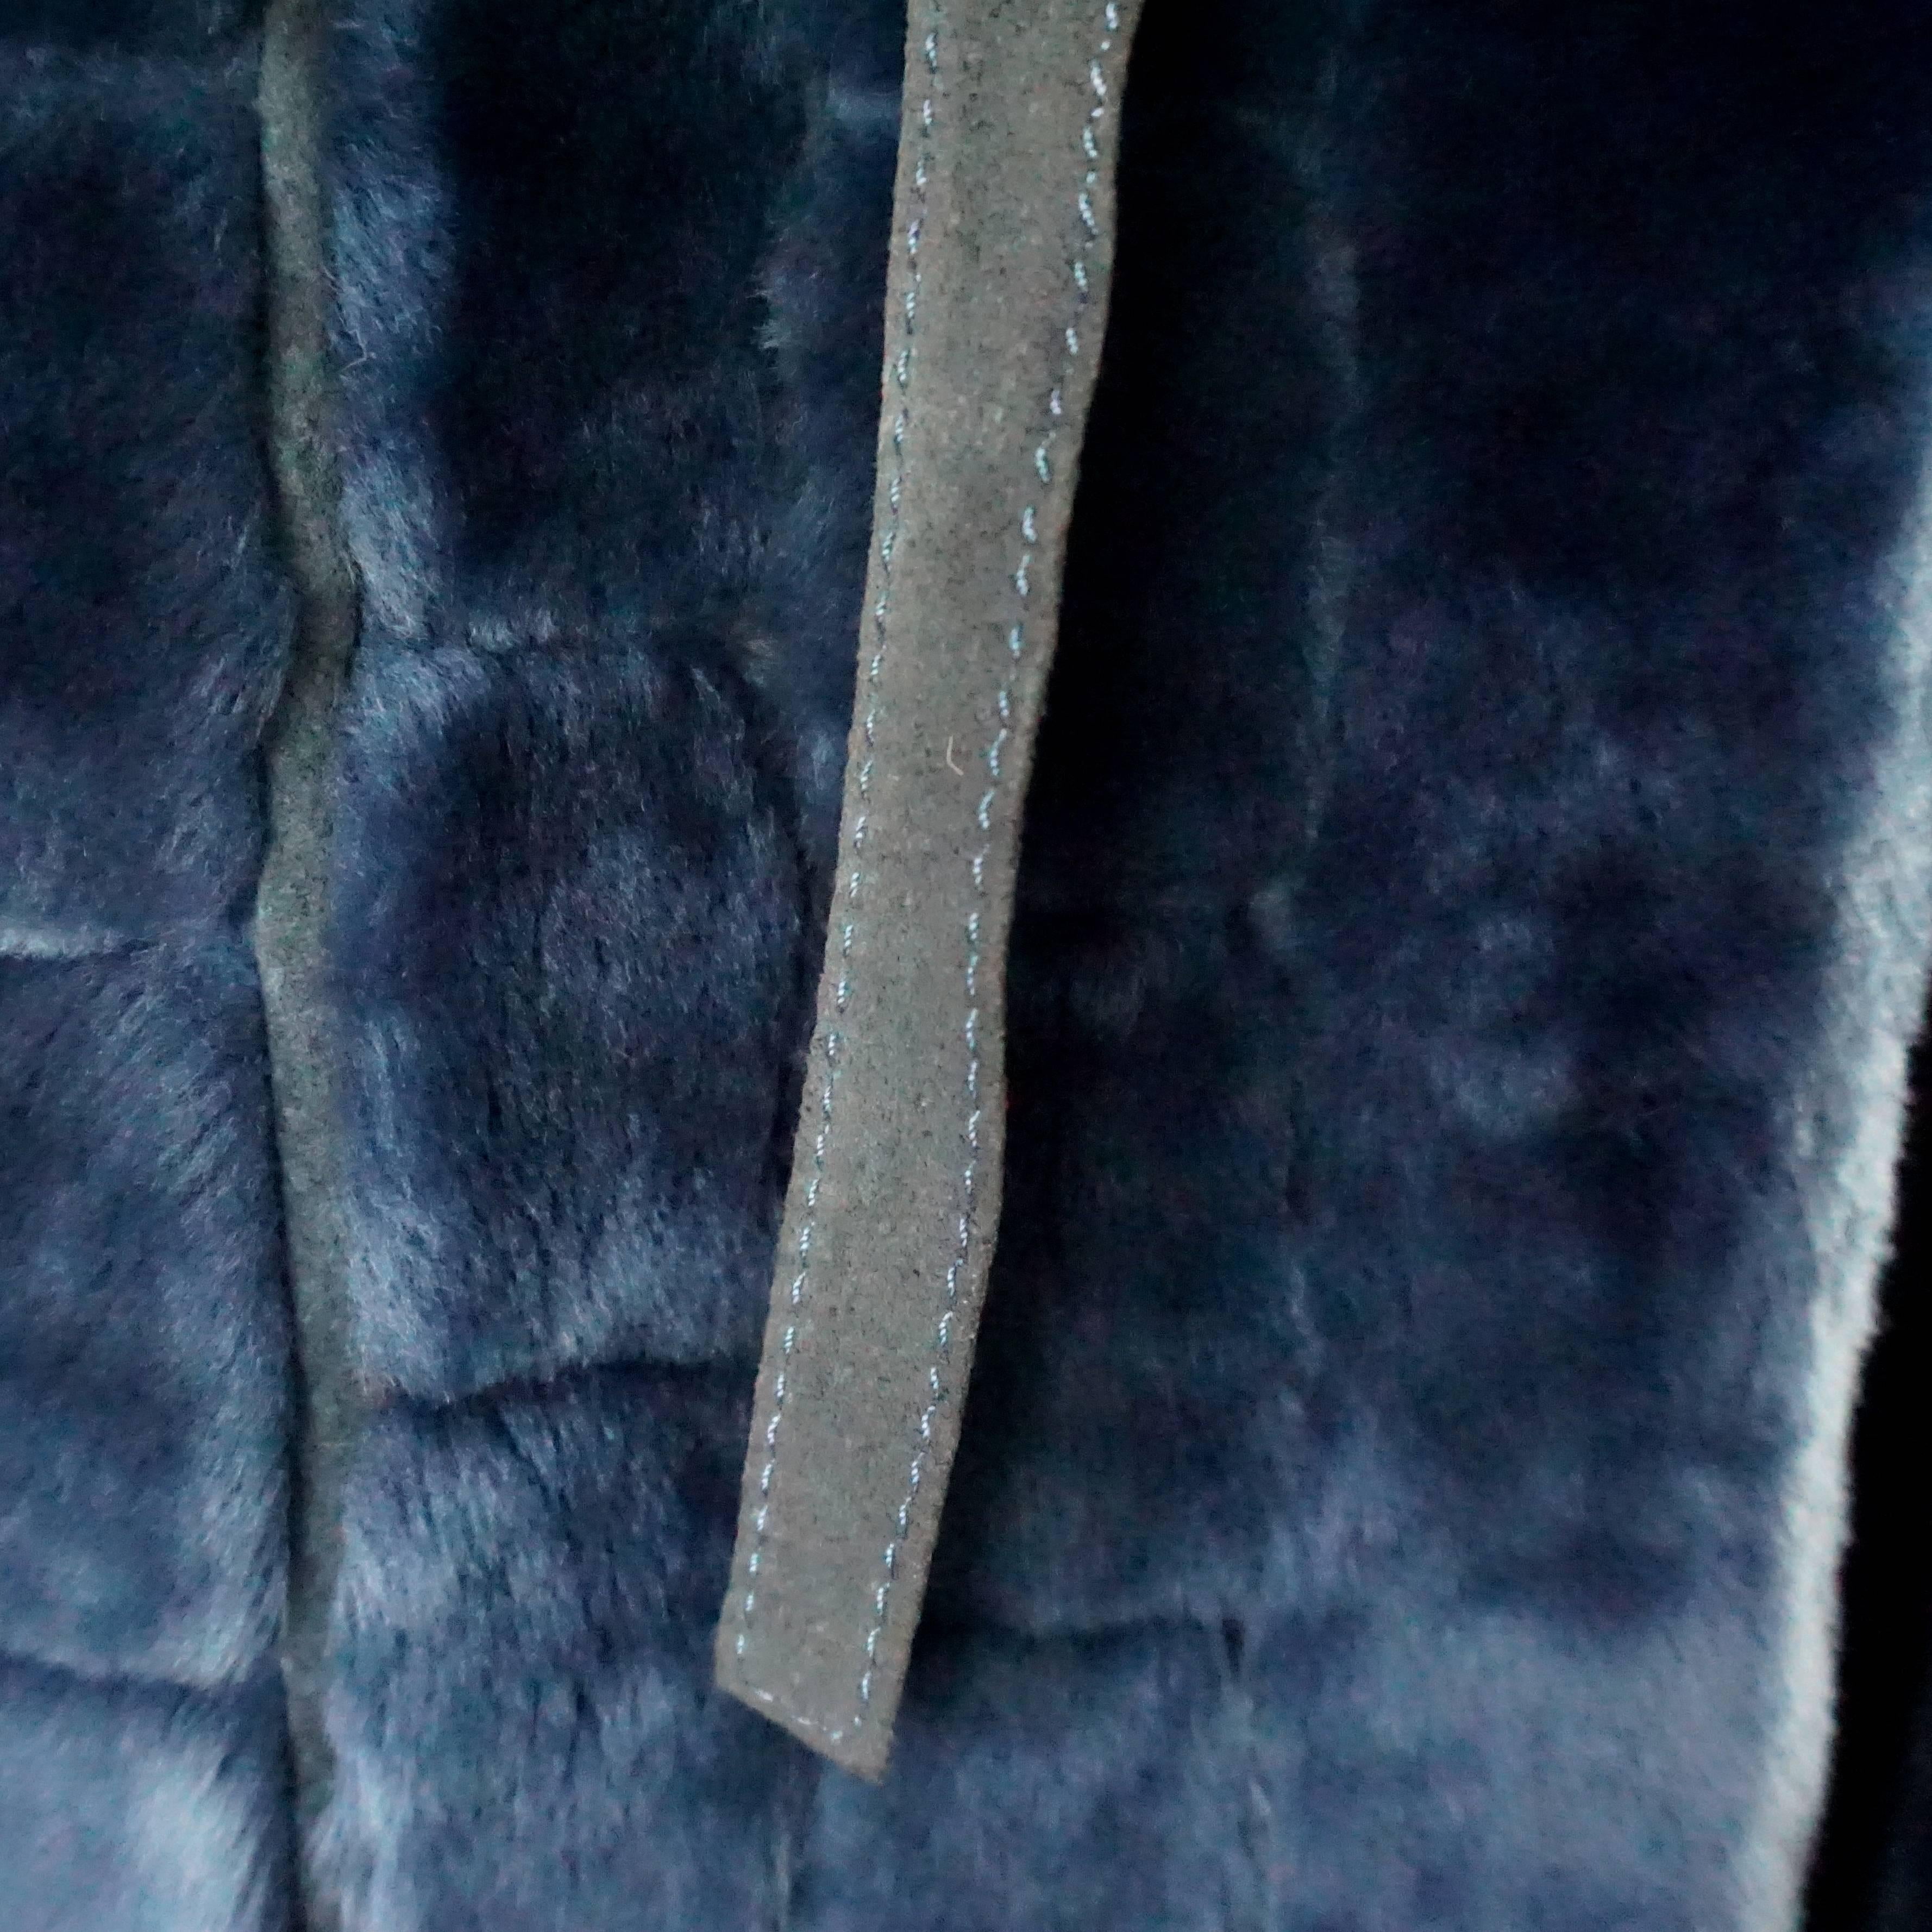 Christian Dior Vintage Blue Faux Fur Coat - L - 1990's at 1stDibs ...